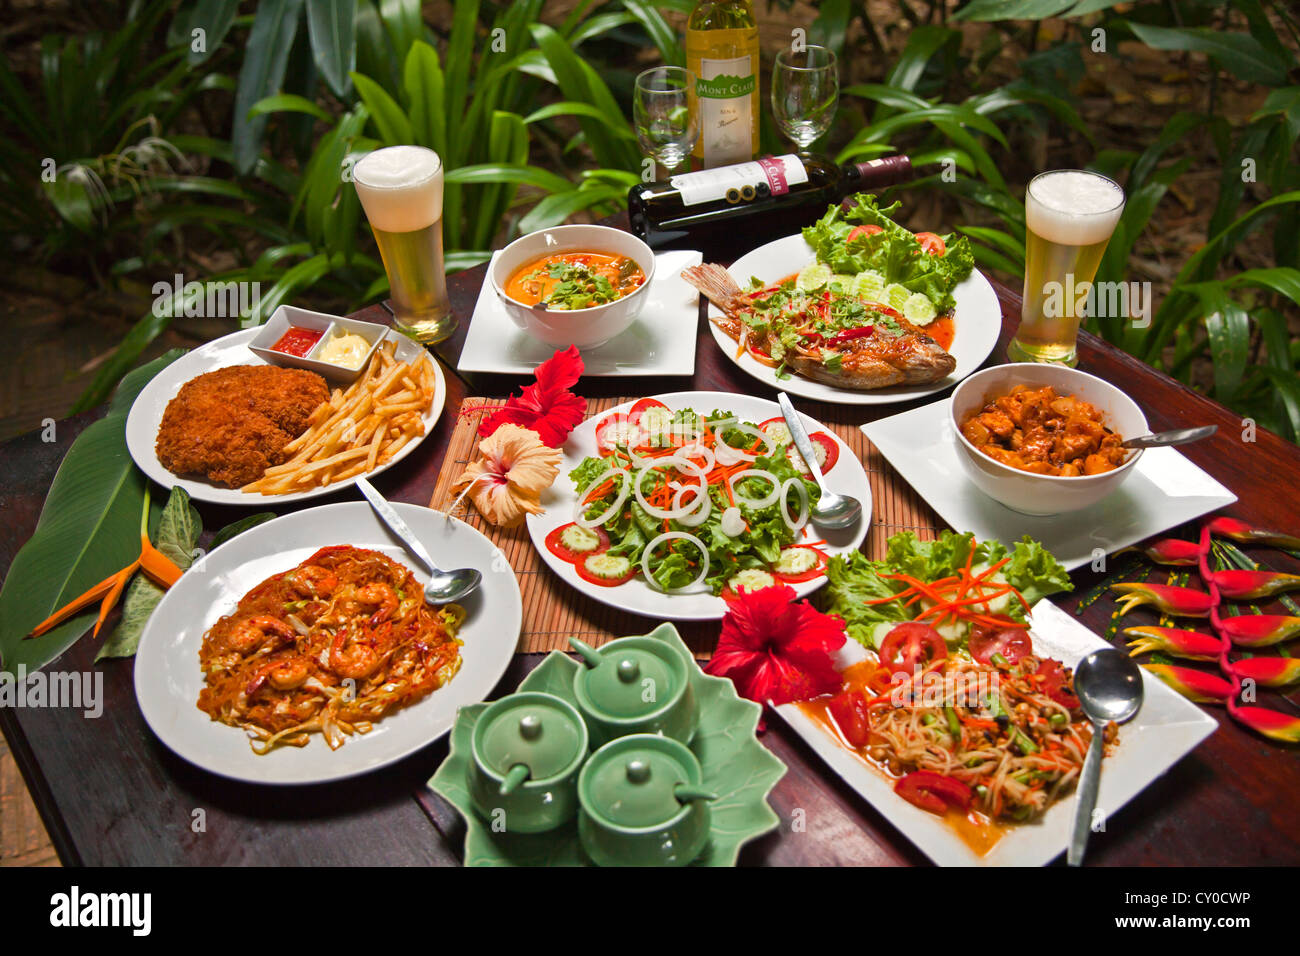 La cuisine thaï délicieux est servi dans notre chambre jungle près de Parc national de Khao Sok - SURATHANI PROVENCE, THAÏLANDE Banque D'Images